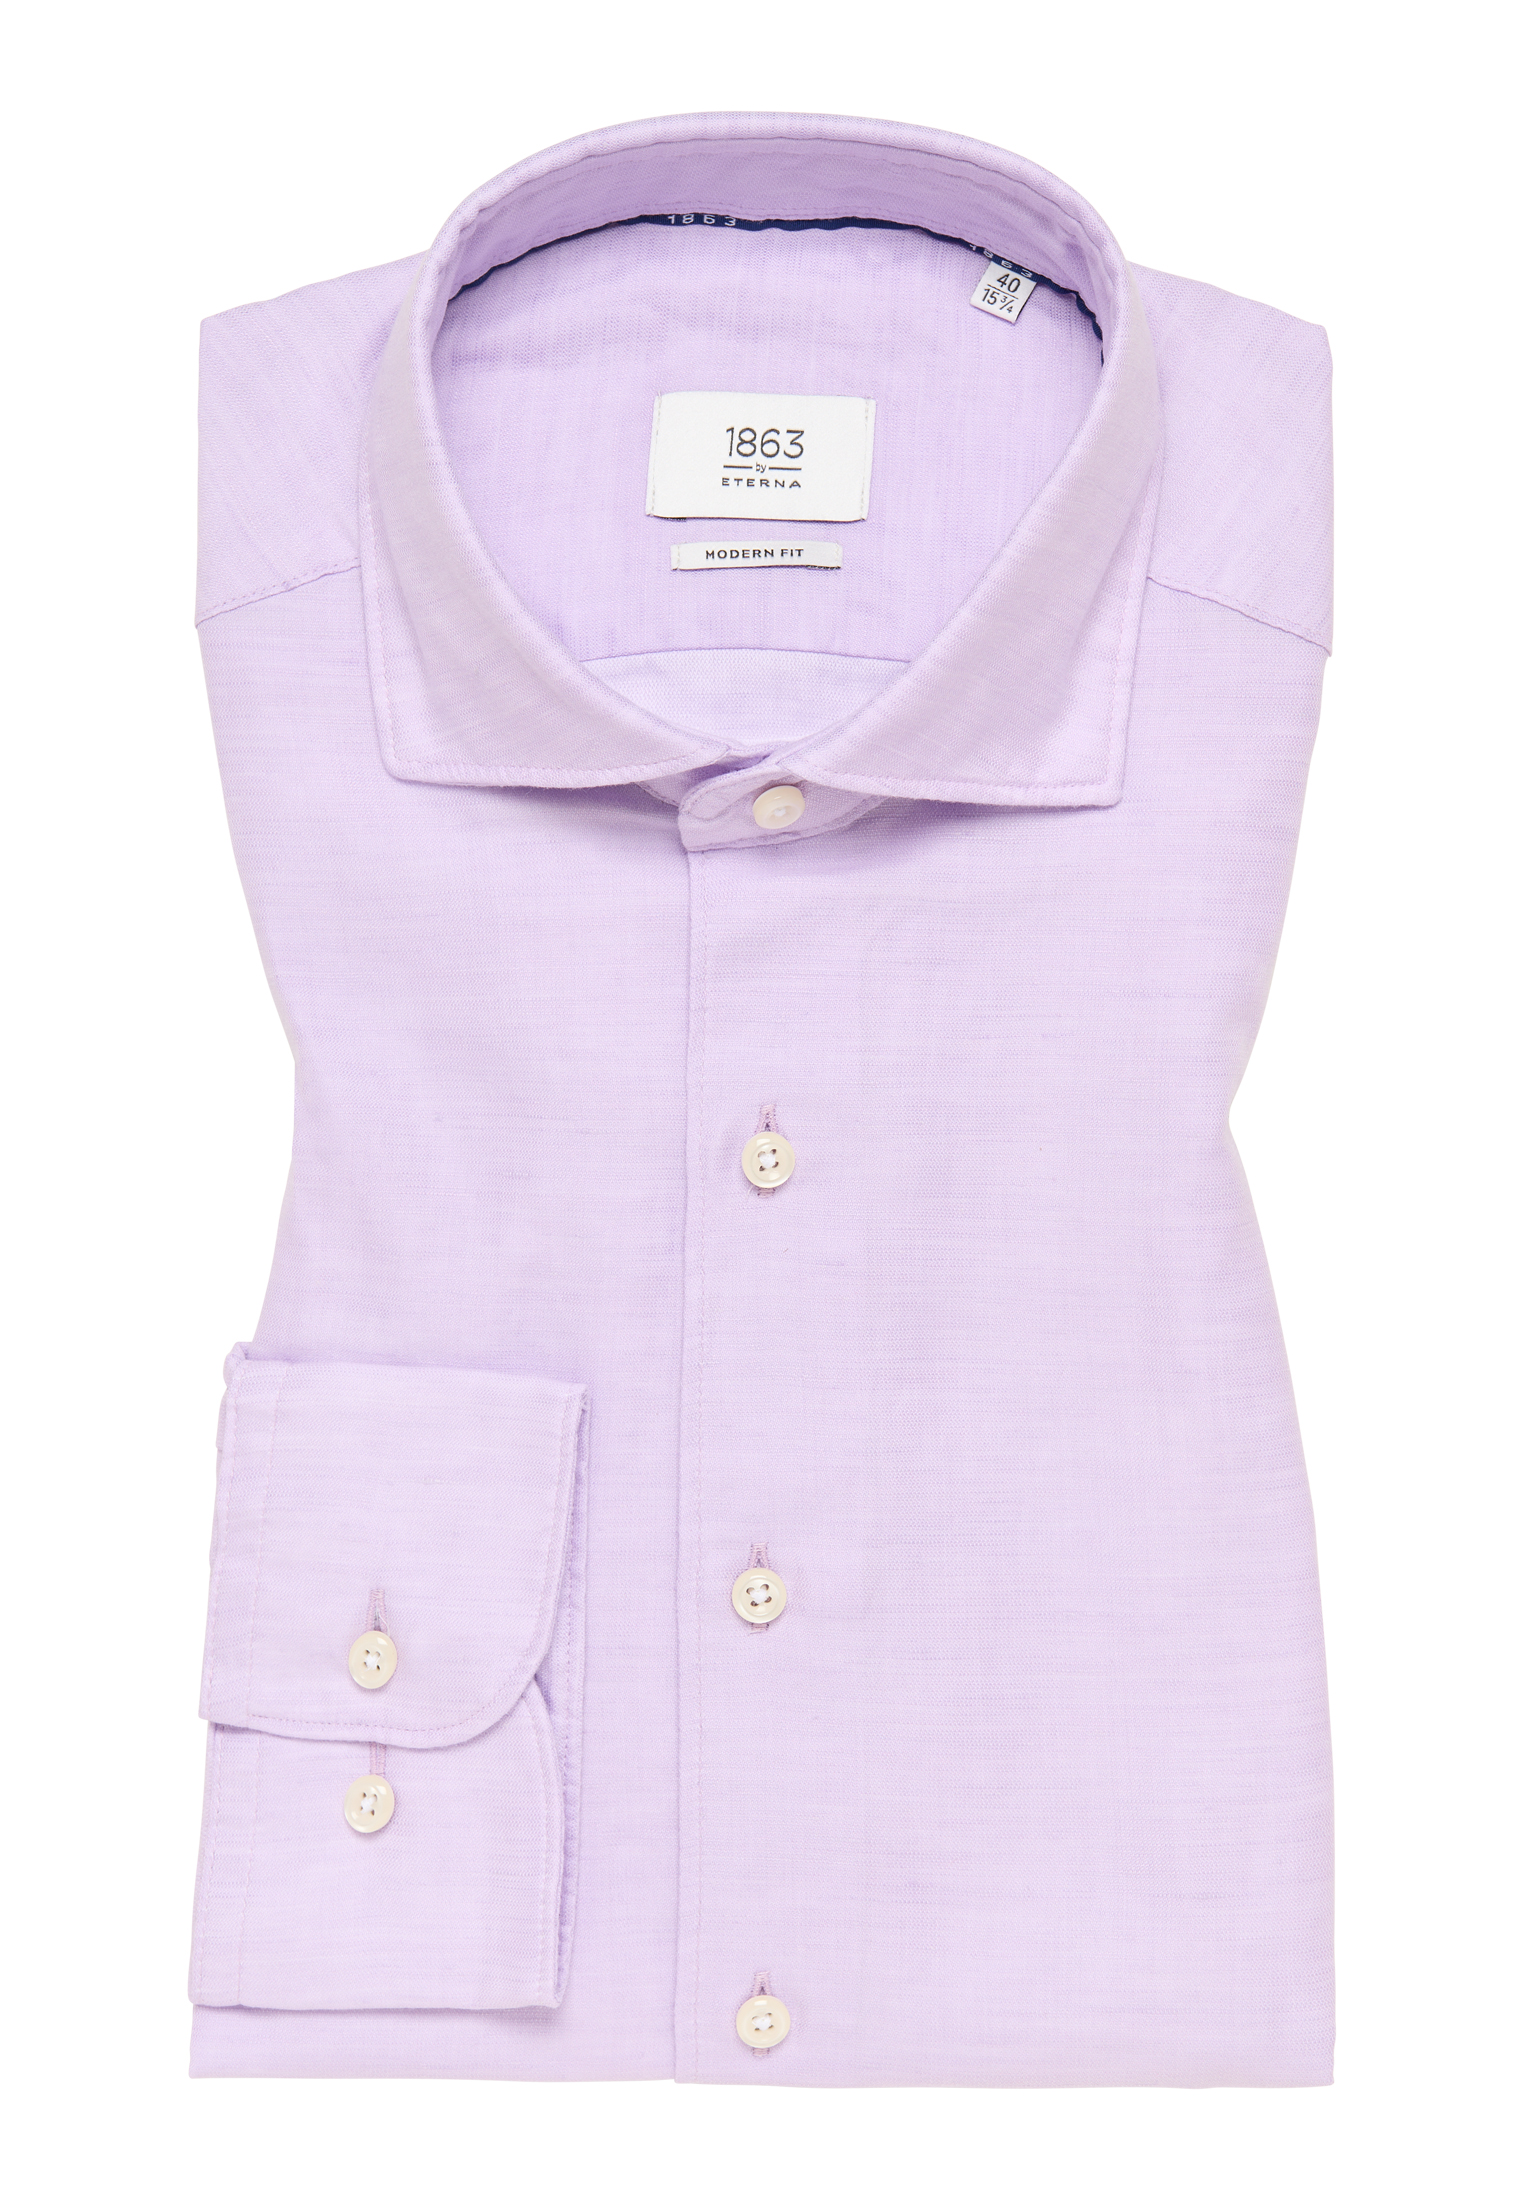 Shirt FIT Linen | long 46 | | MODERN lavender sleeve | plain lavender in 1SH00629-09-11-46-1/1